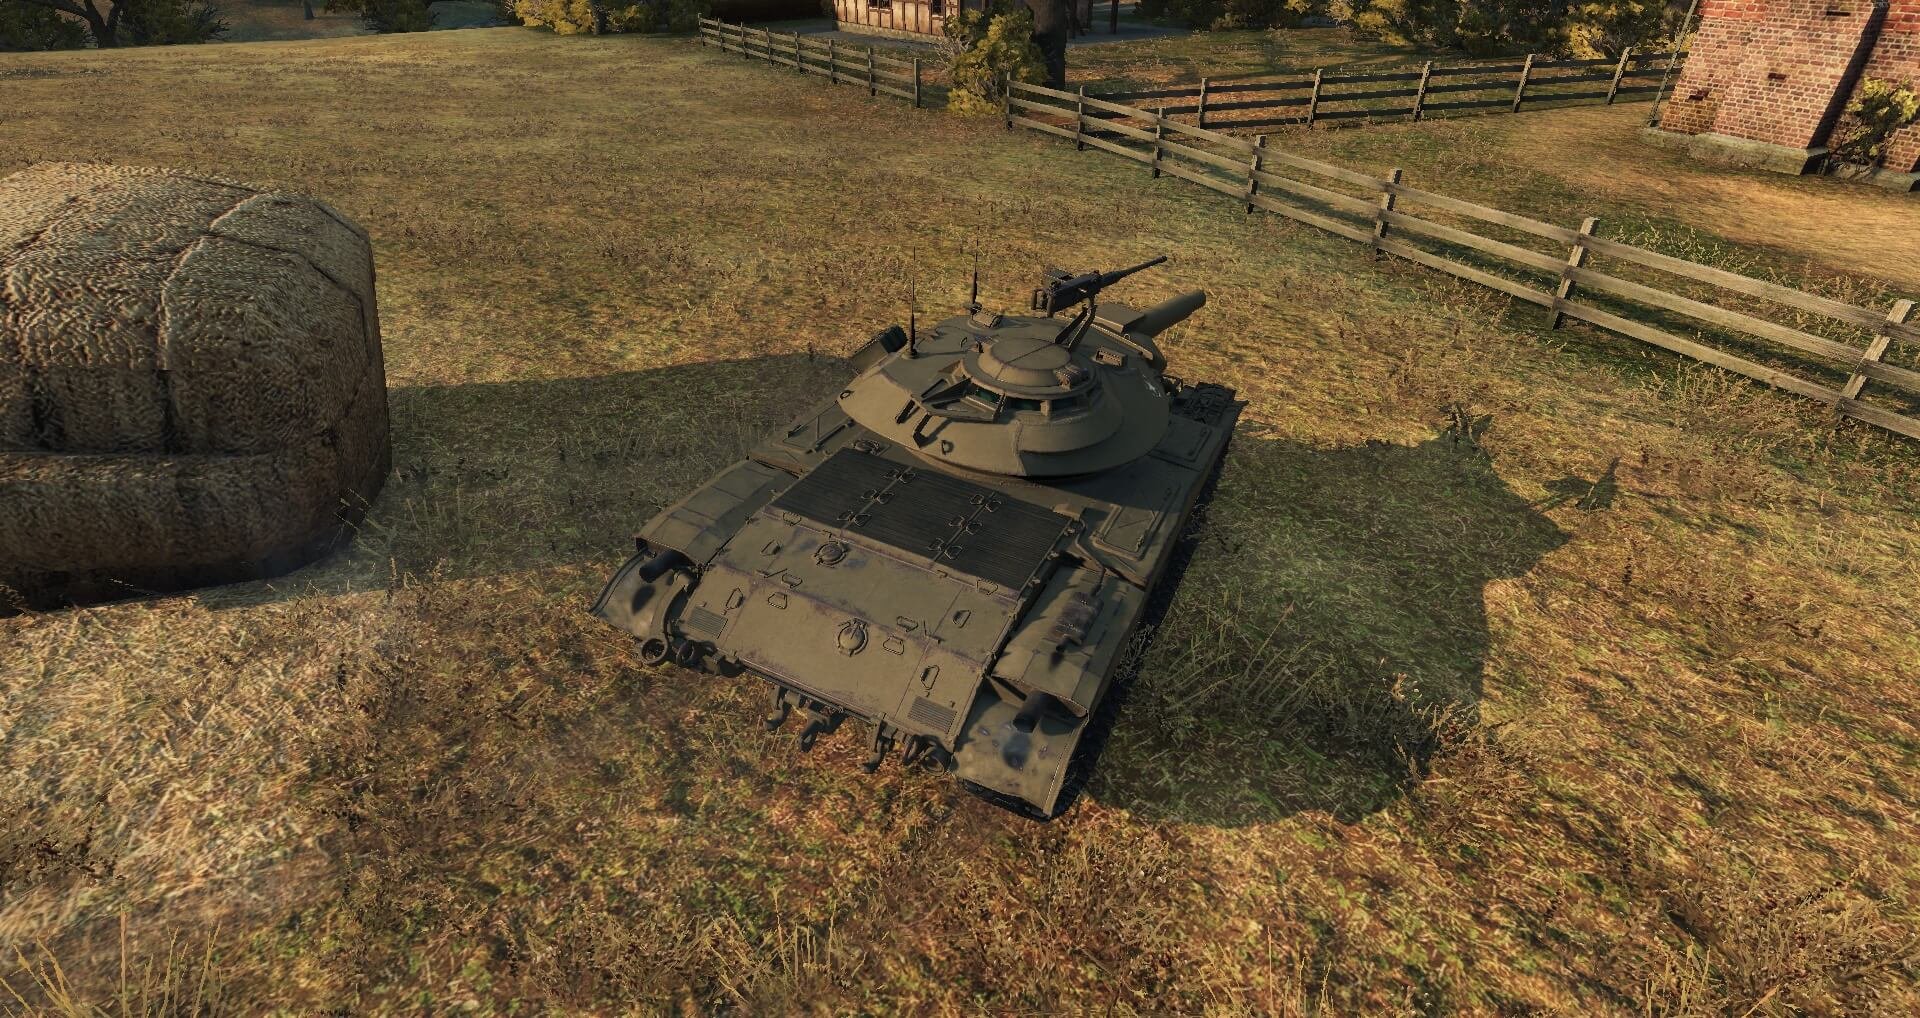 Wot 9. Т49 World of Tanks. Танк т49 в World of Tanks. T49 лёгкий танк. 90 Мм пушка т49.